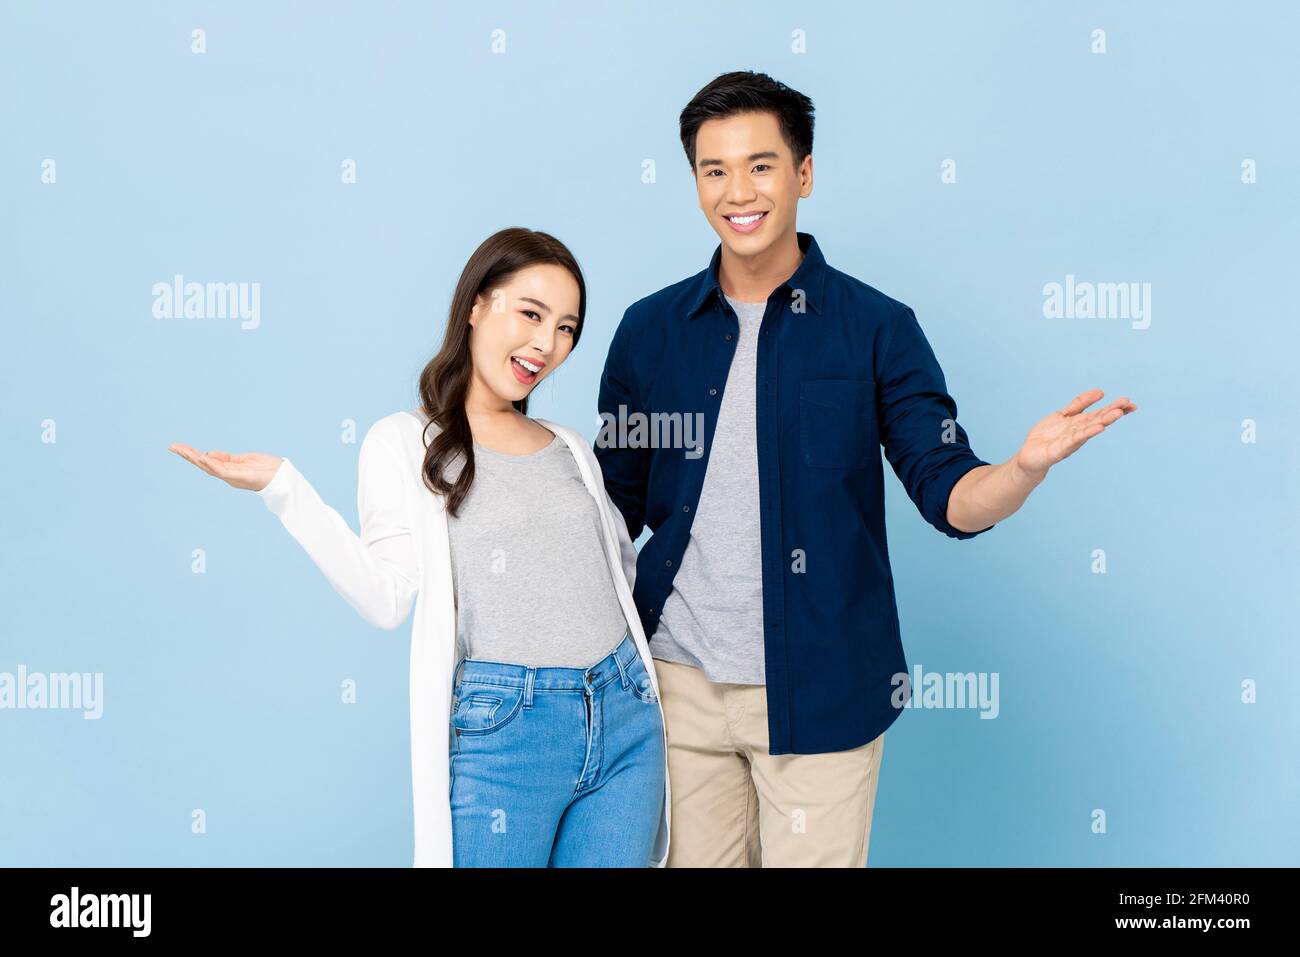 Ankündigungs-Porträt von glücklich fröhlich genial asiatische Paar mit groß Lächelt und öffnet die Hände auf einem isolierten hellblauen Hintergrund Stockfoto